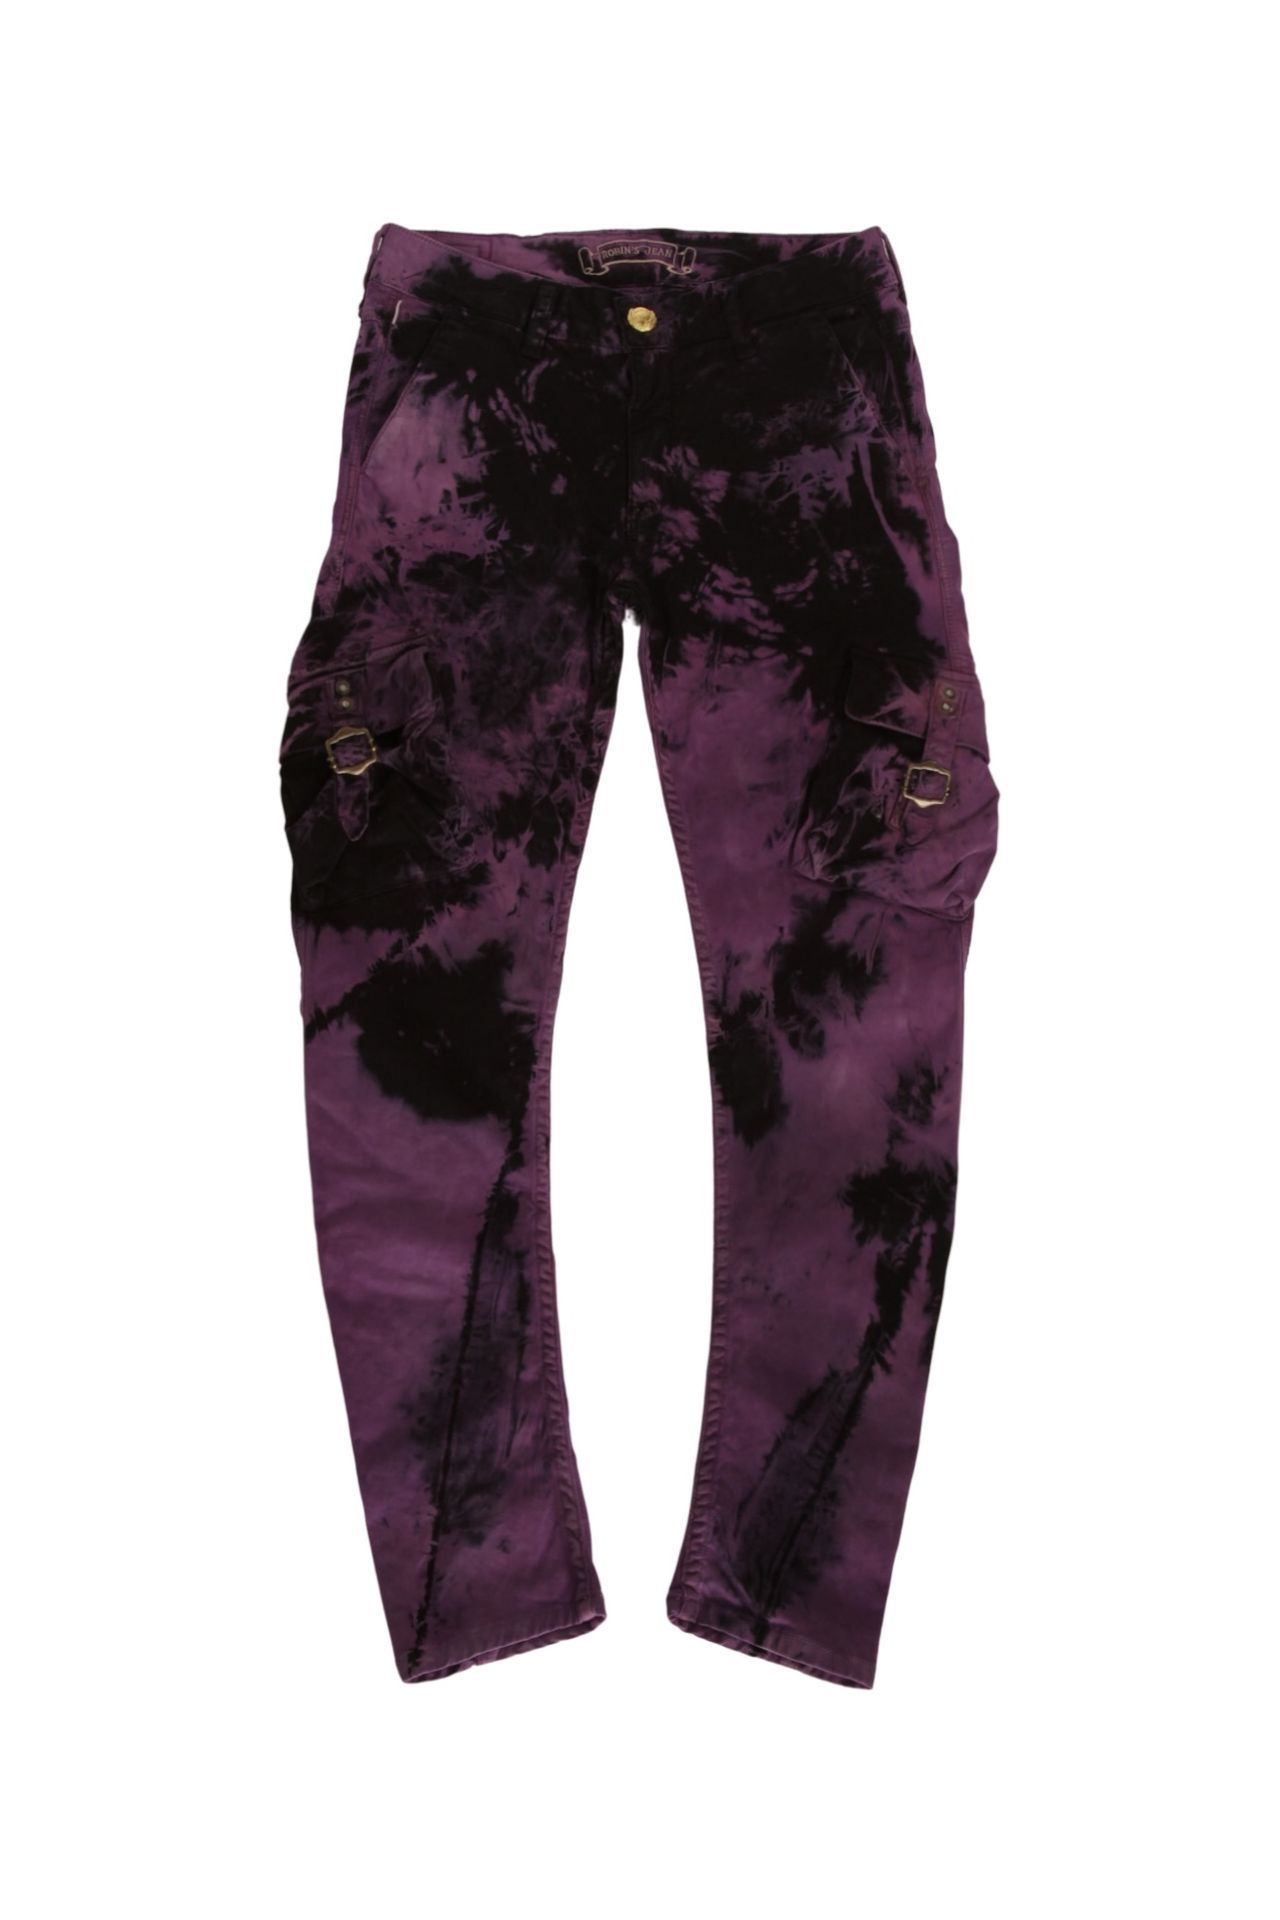 Tie-dye cargo trousers - Women's fashion